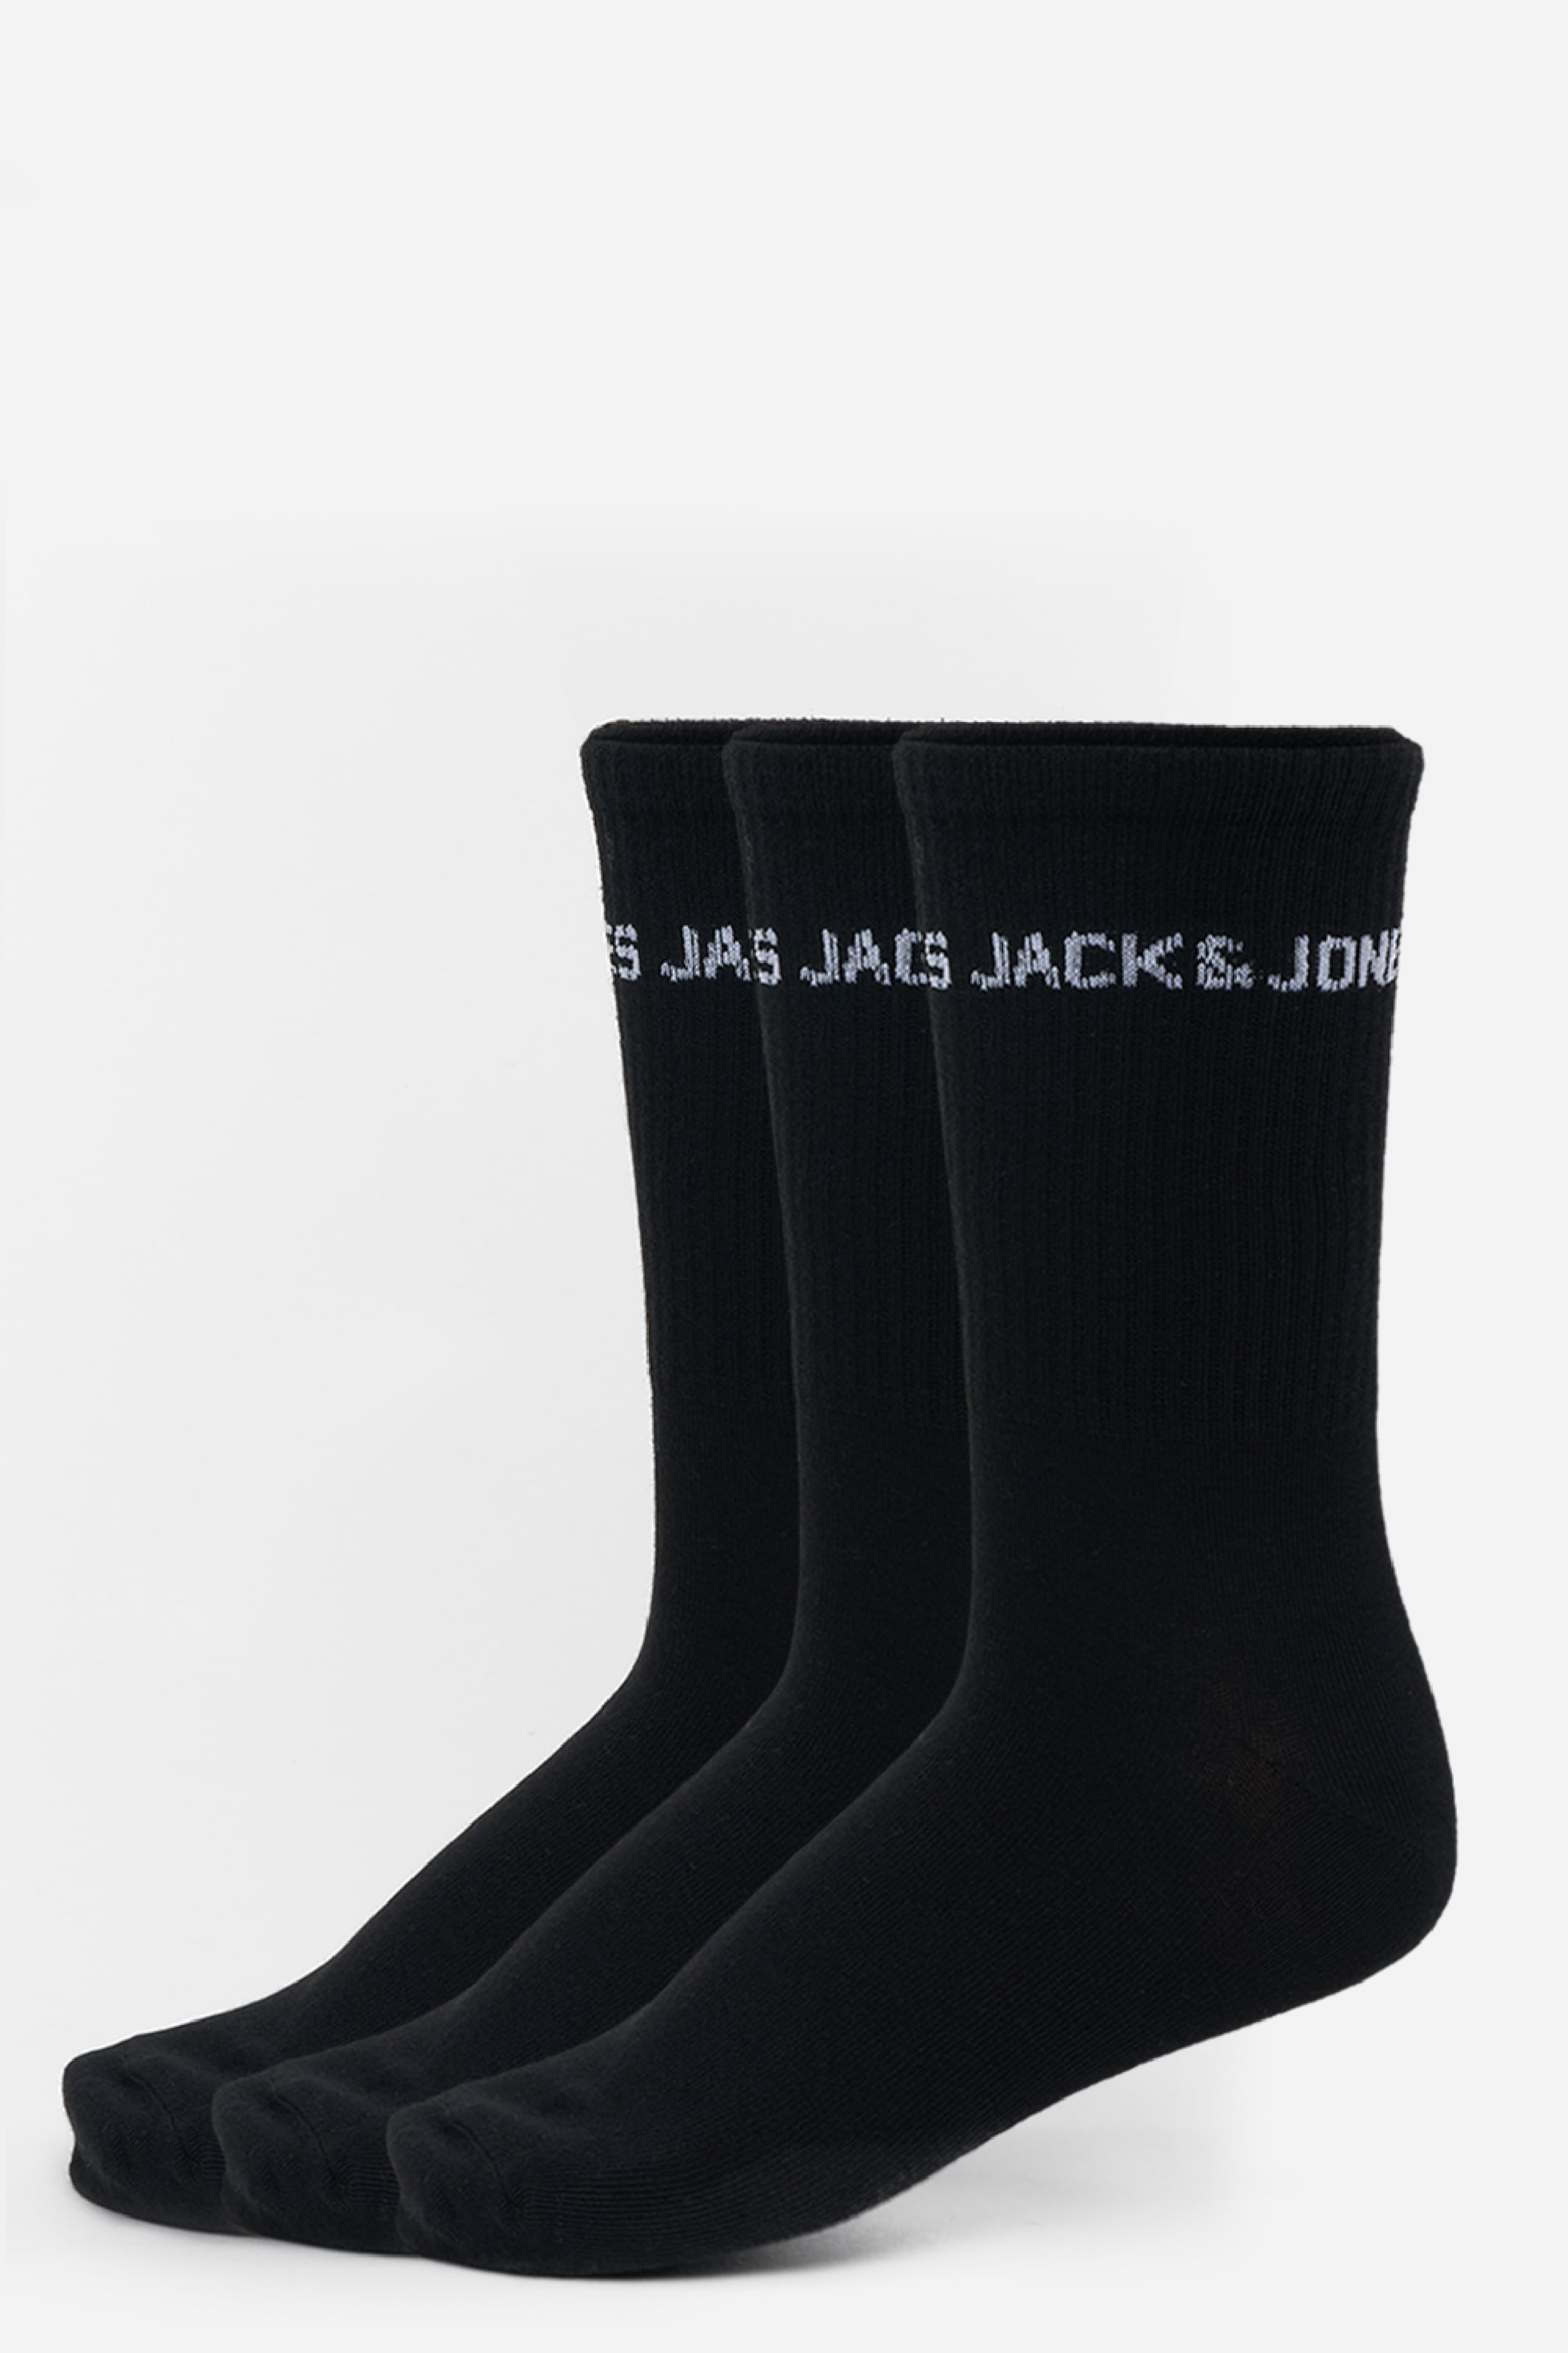 Jack & Jones 3P sokken melvin tennis zwart - 40-46